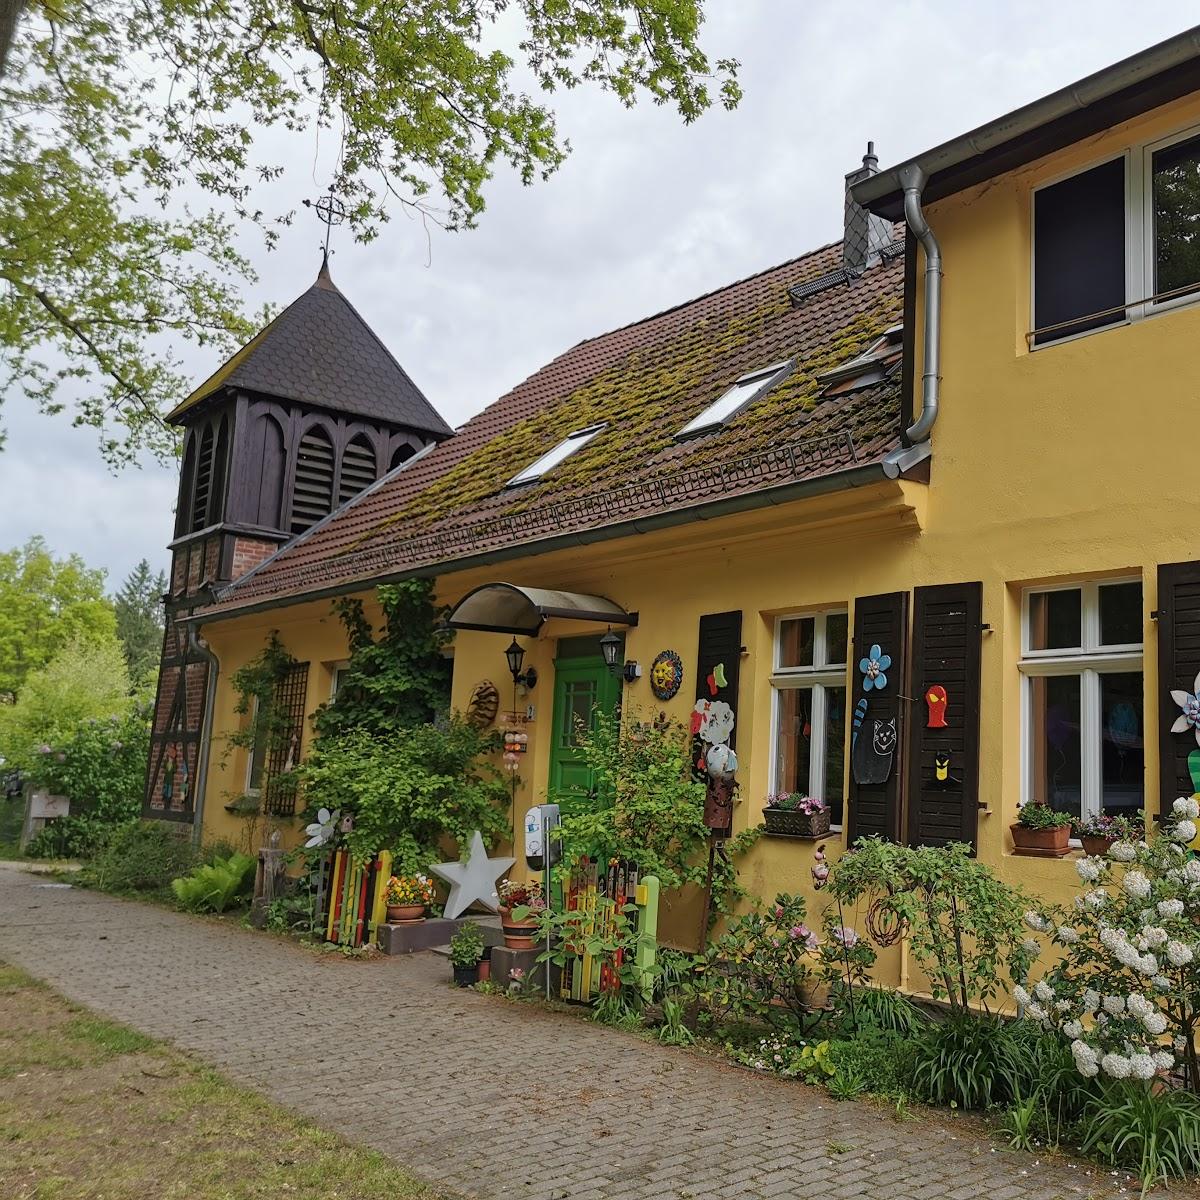 Restaurant "Hauswald Kaffee" in Schorfheide